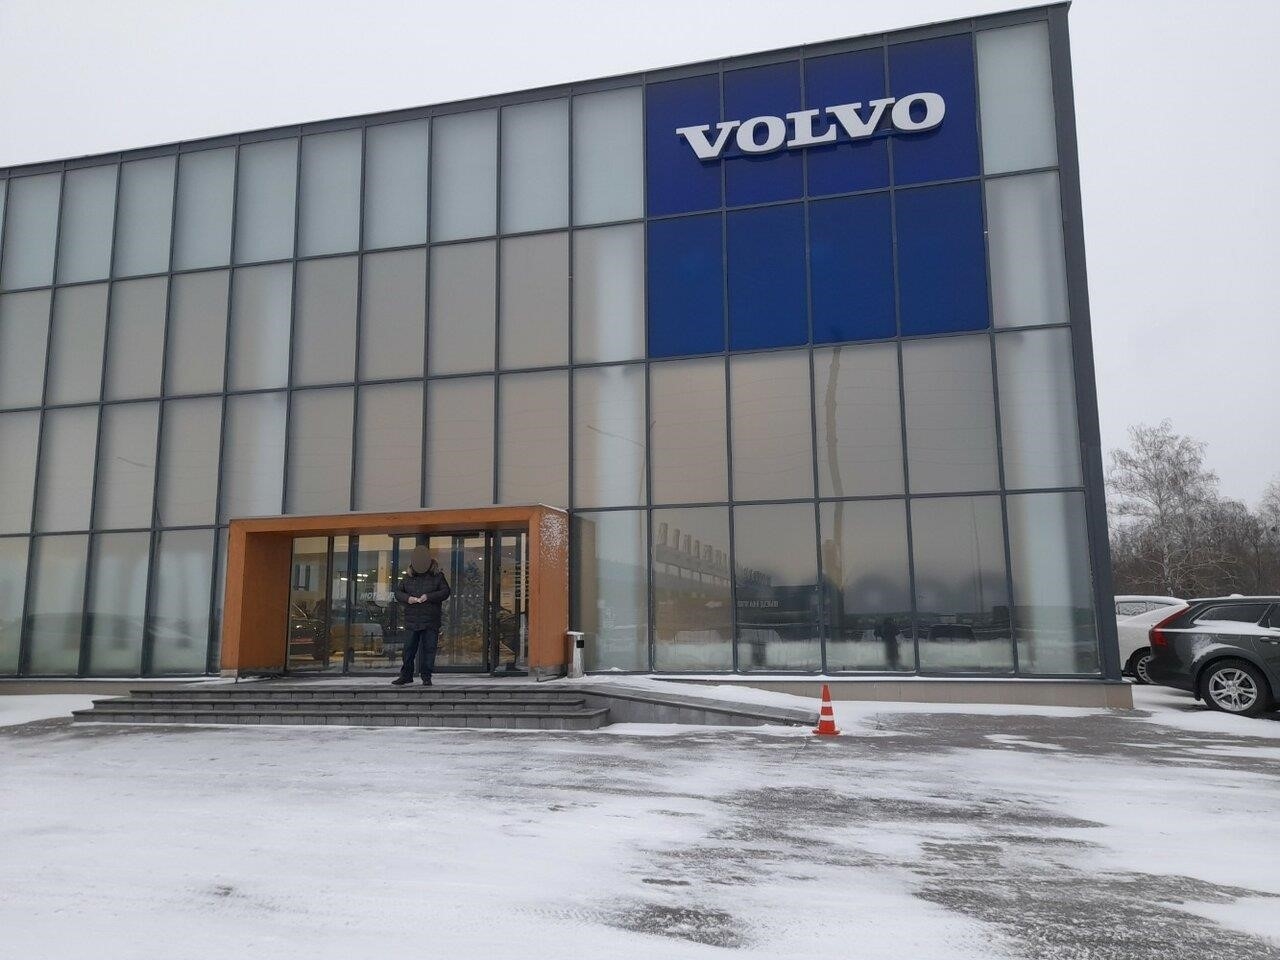 Volvo Мотор Ленд - официальный сервис Volvo в Воронеже улица Изыскателей, 23/2, 1